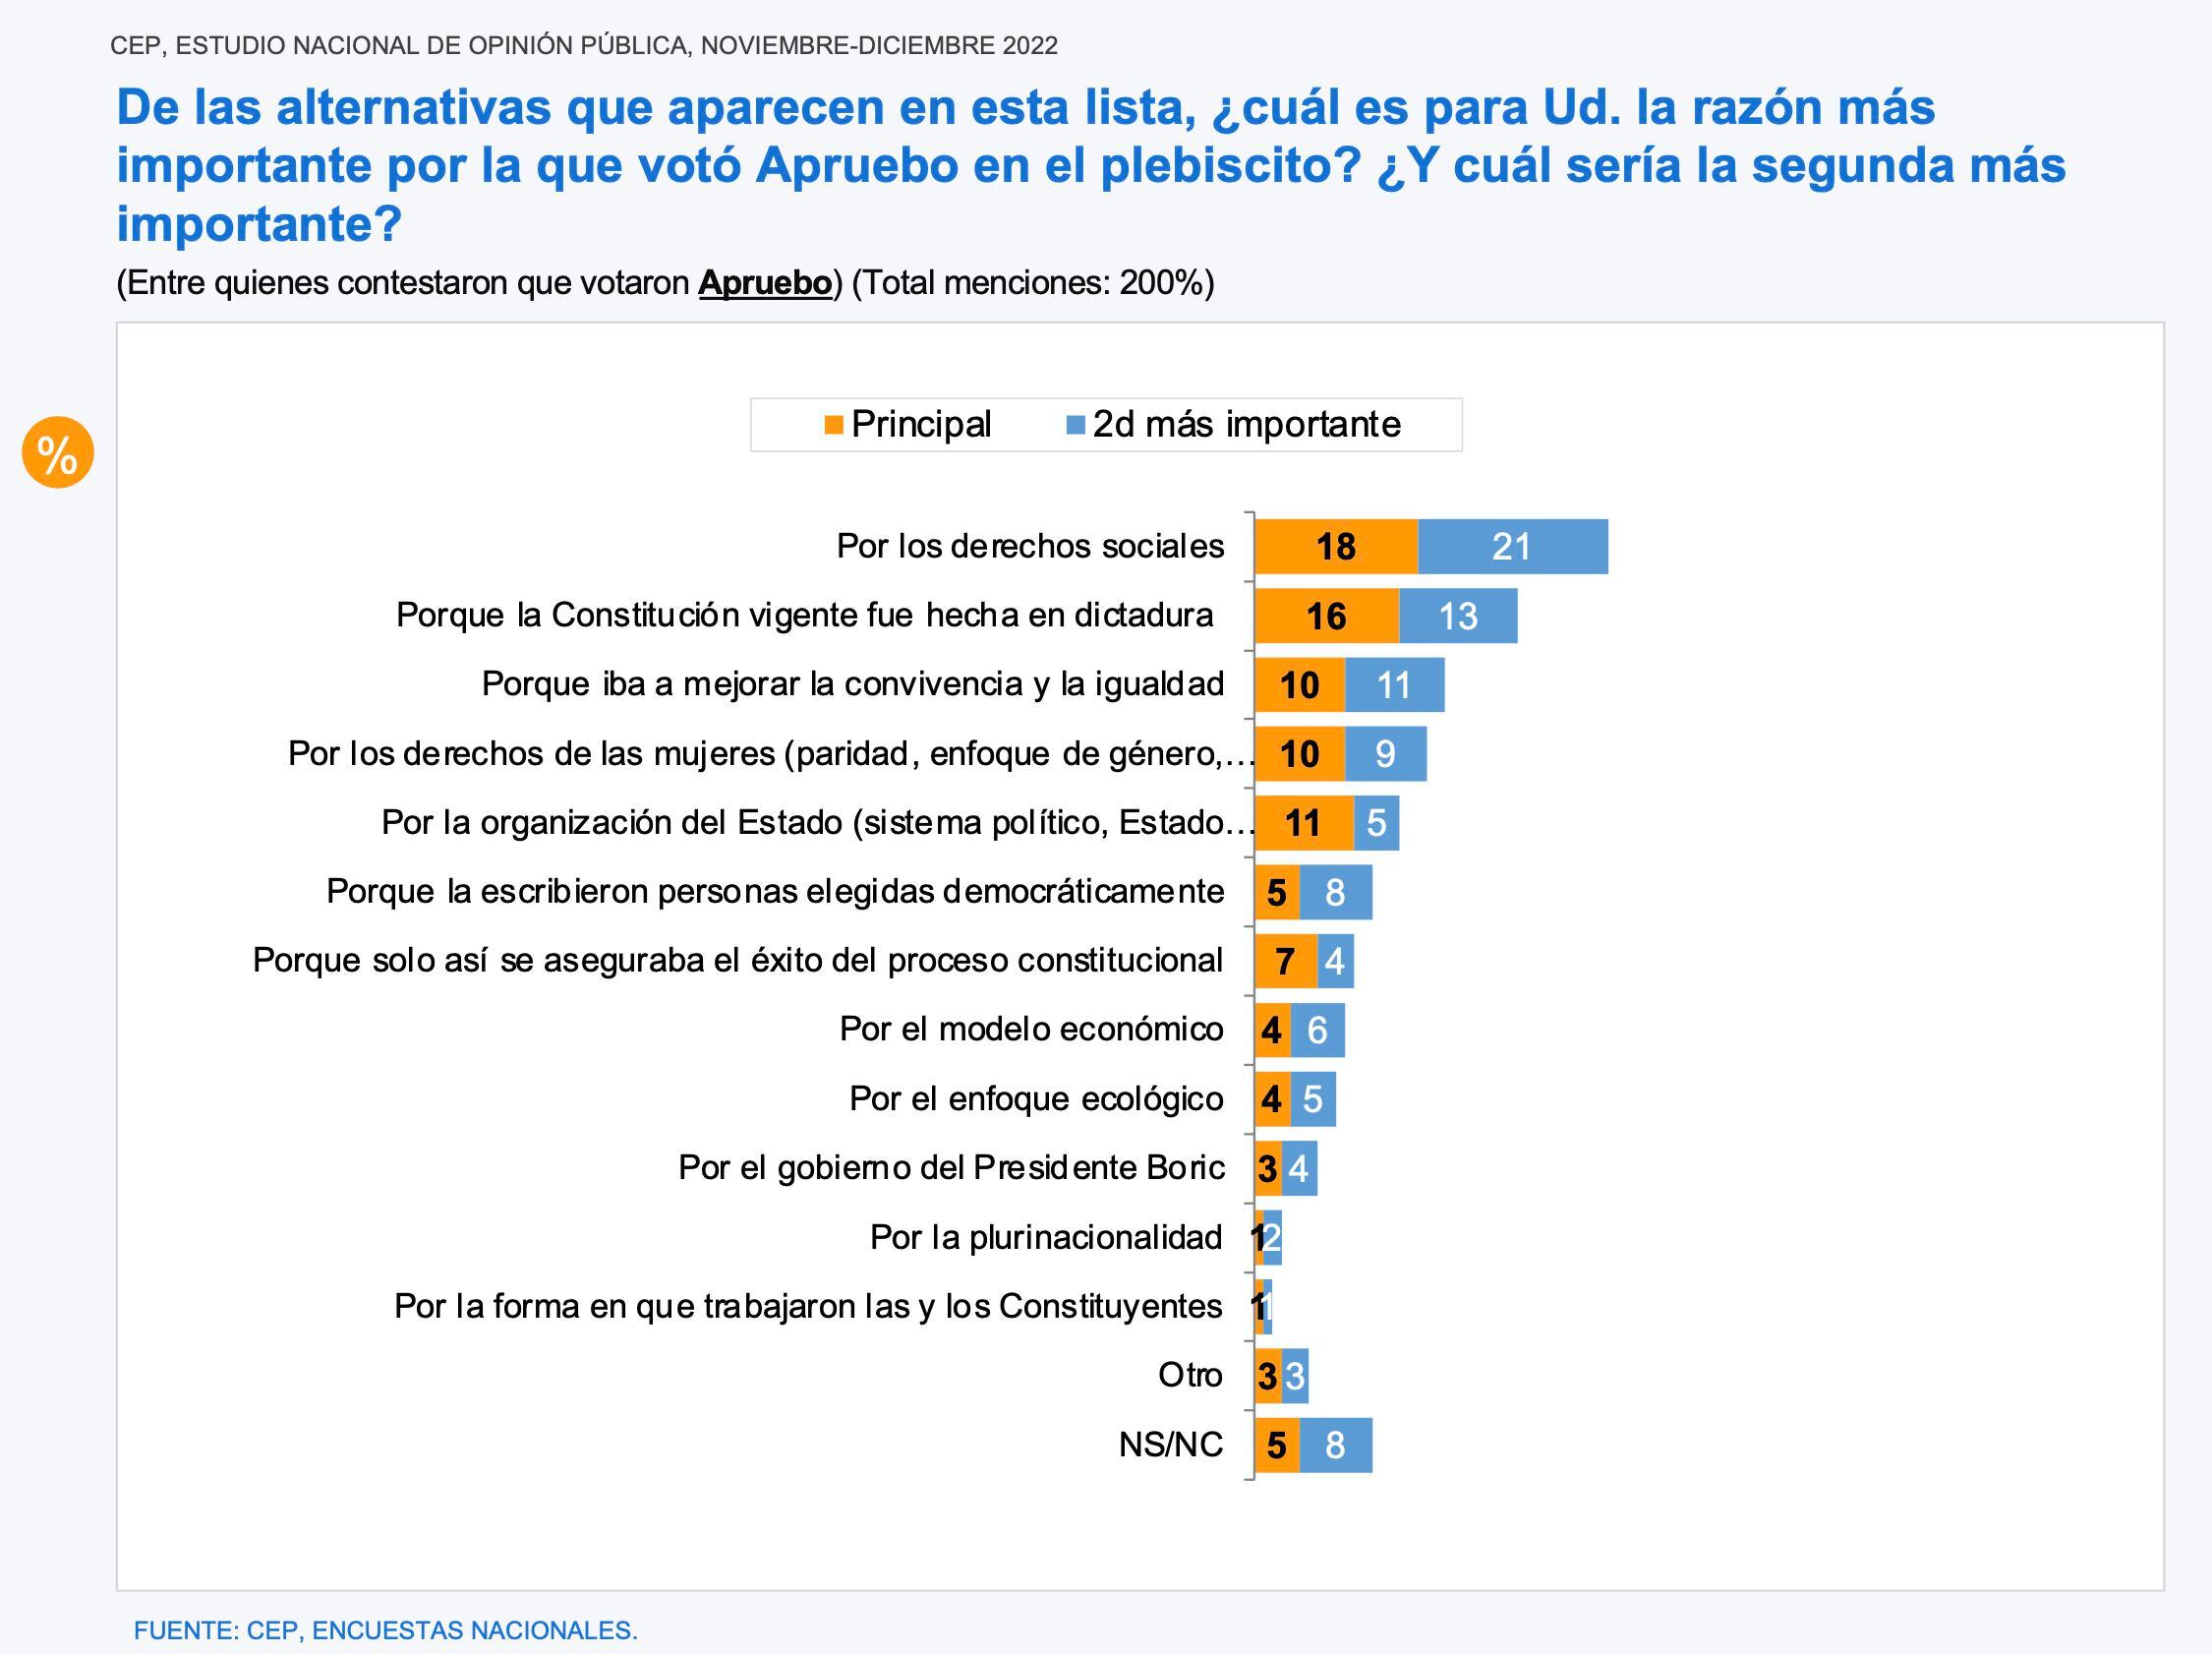 21 razones para votar en contra de la propuesta aprobada en el Consejo  Constitucional « Diario y Radio Universidad Chile